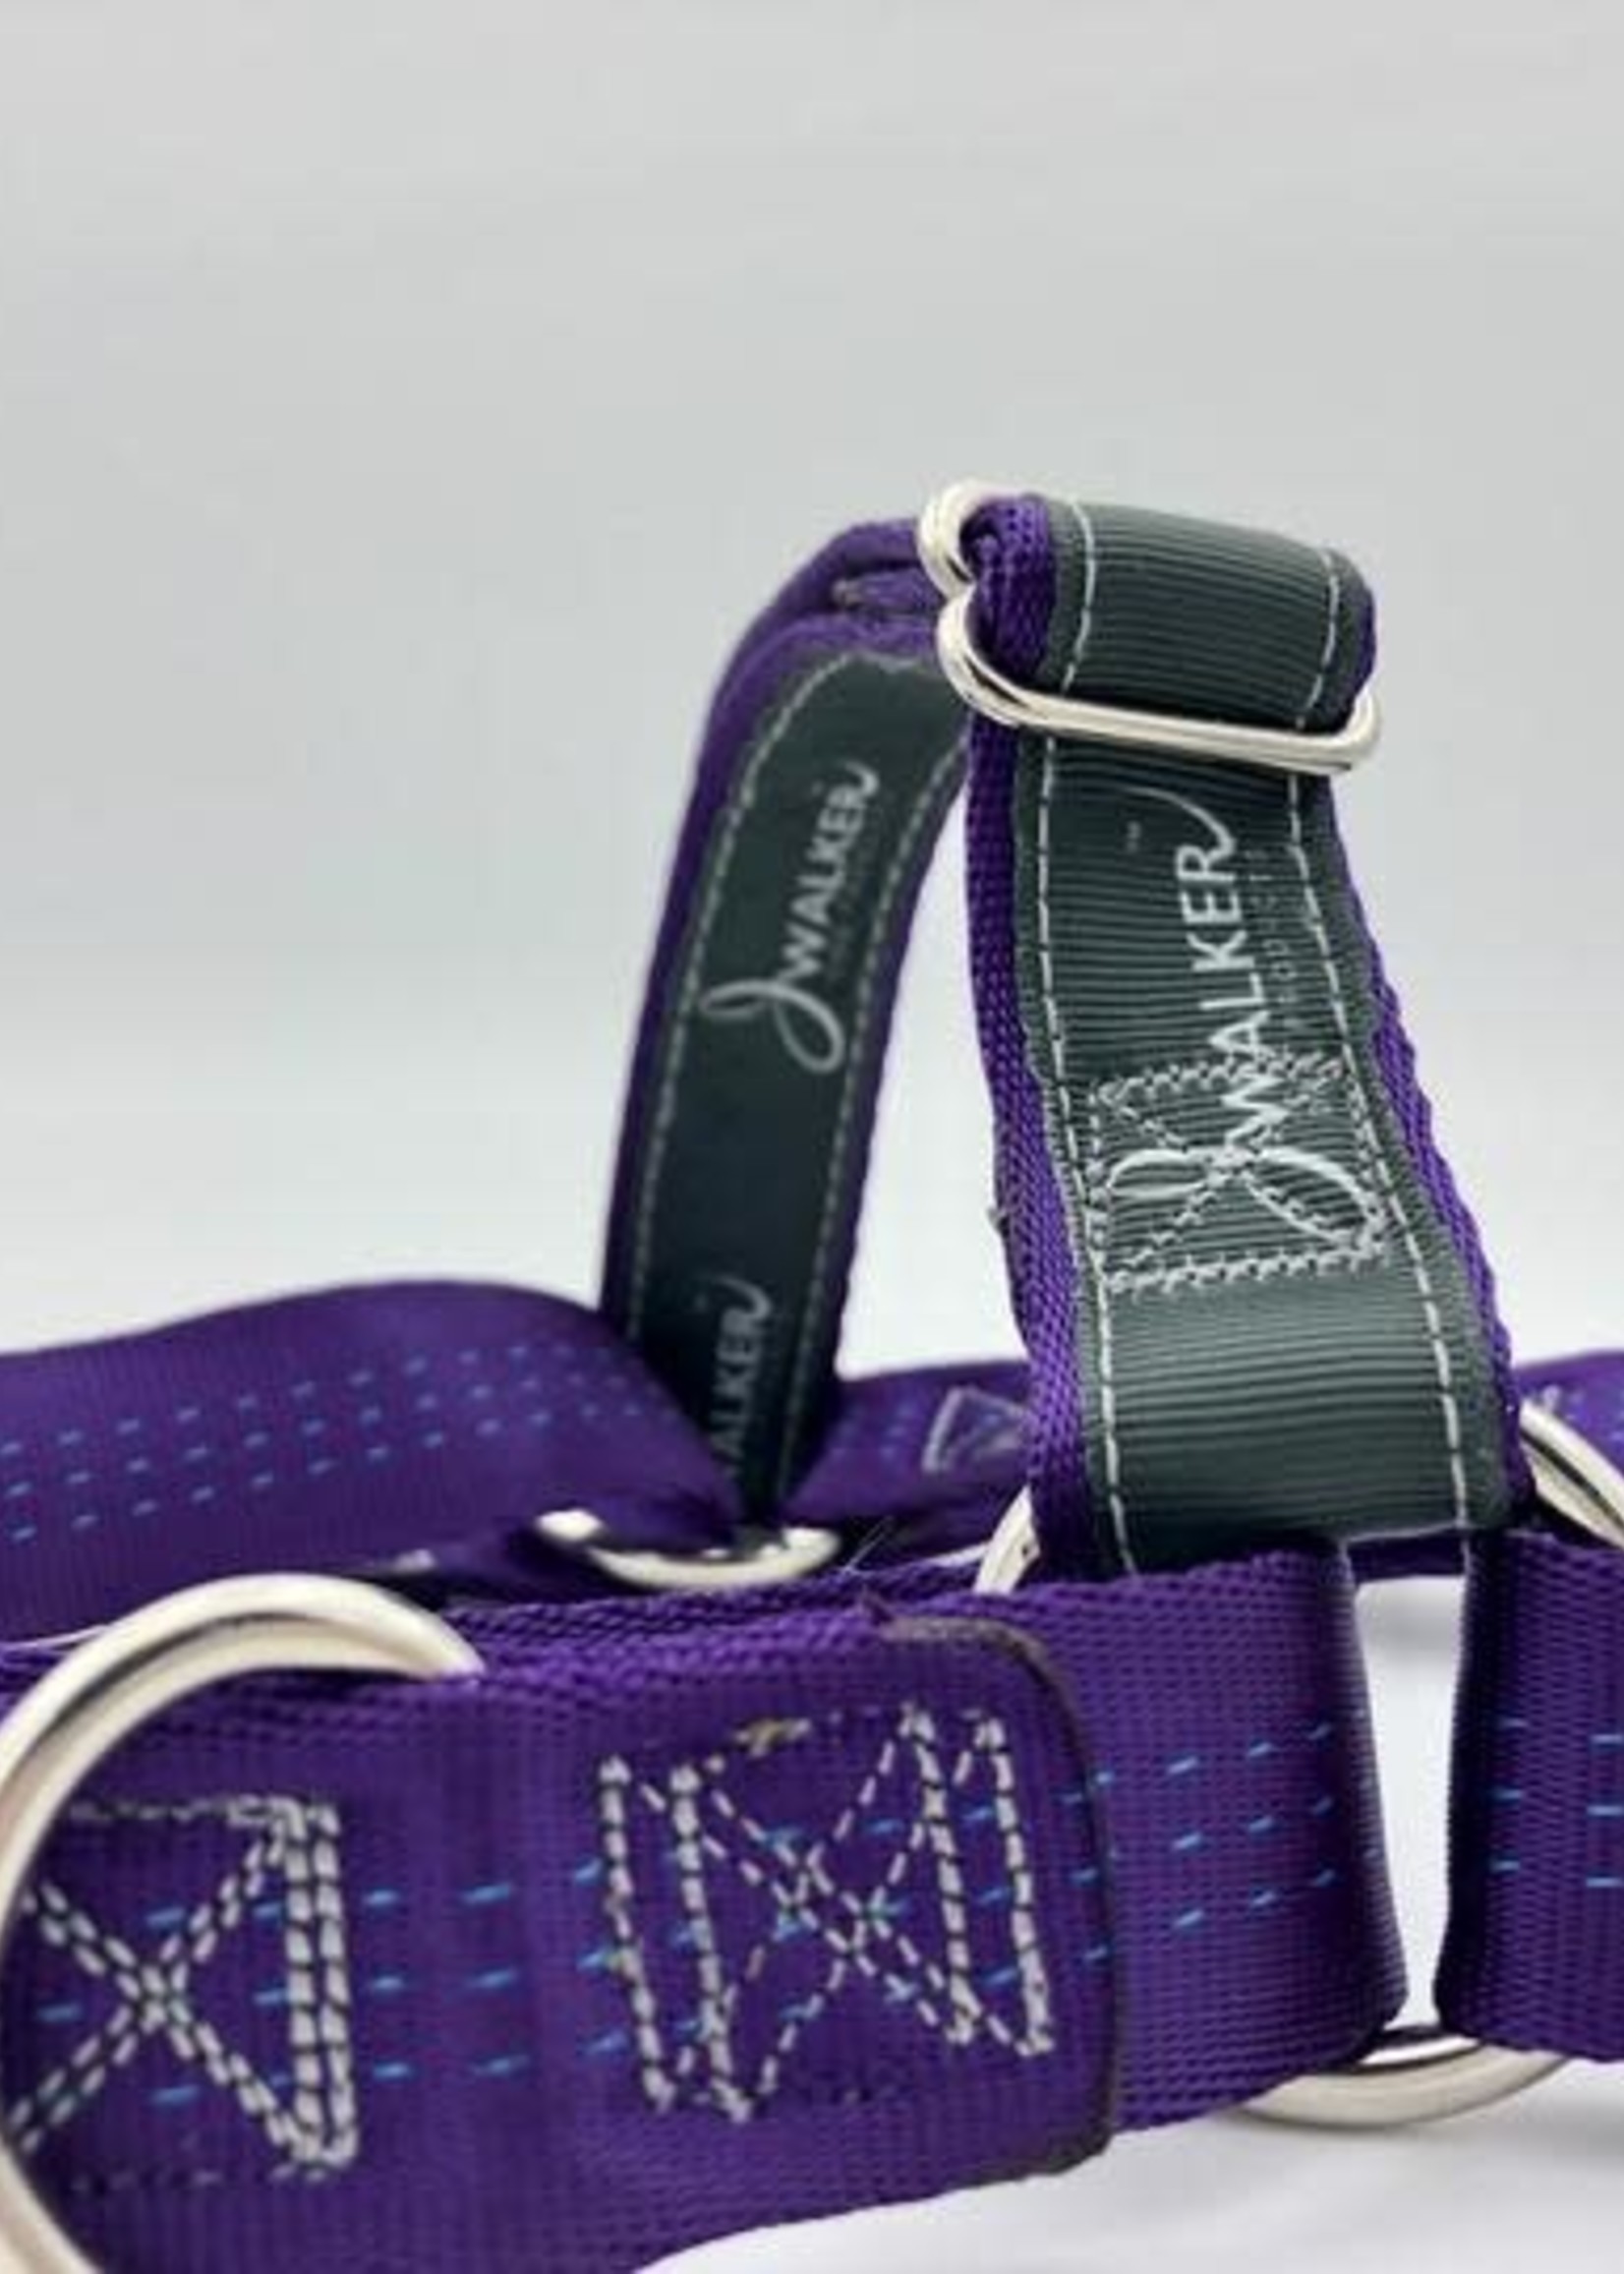 JWalker JWalker Harness - Purple - S/M